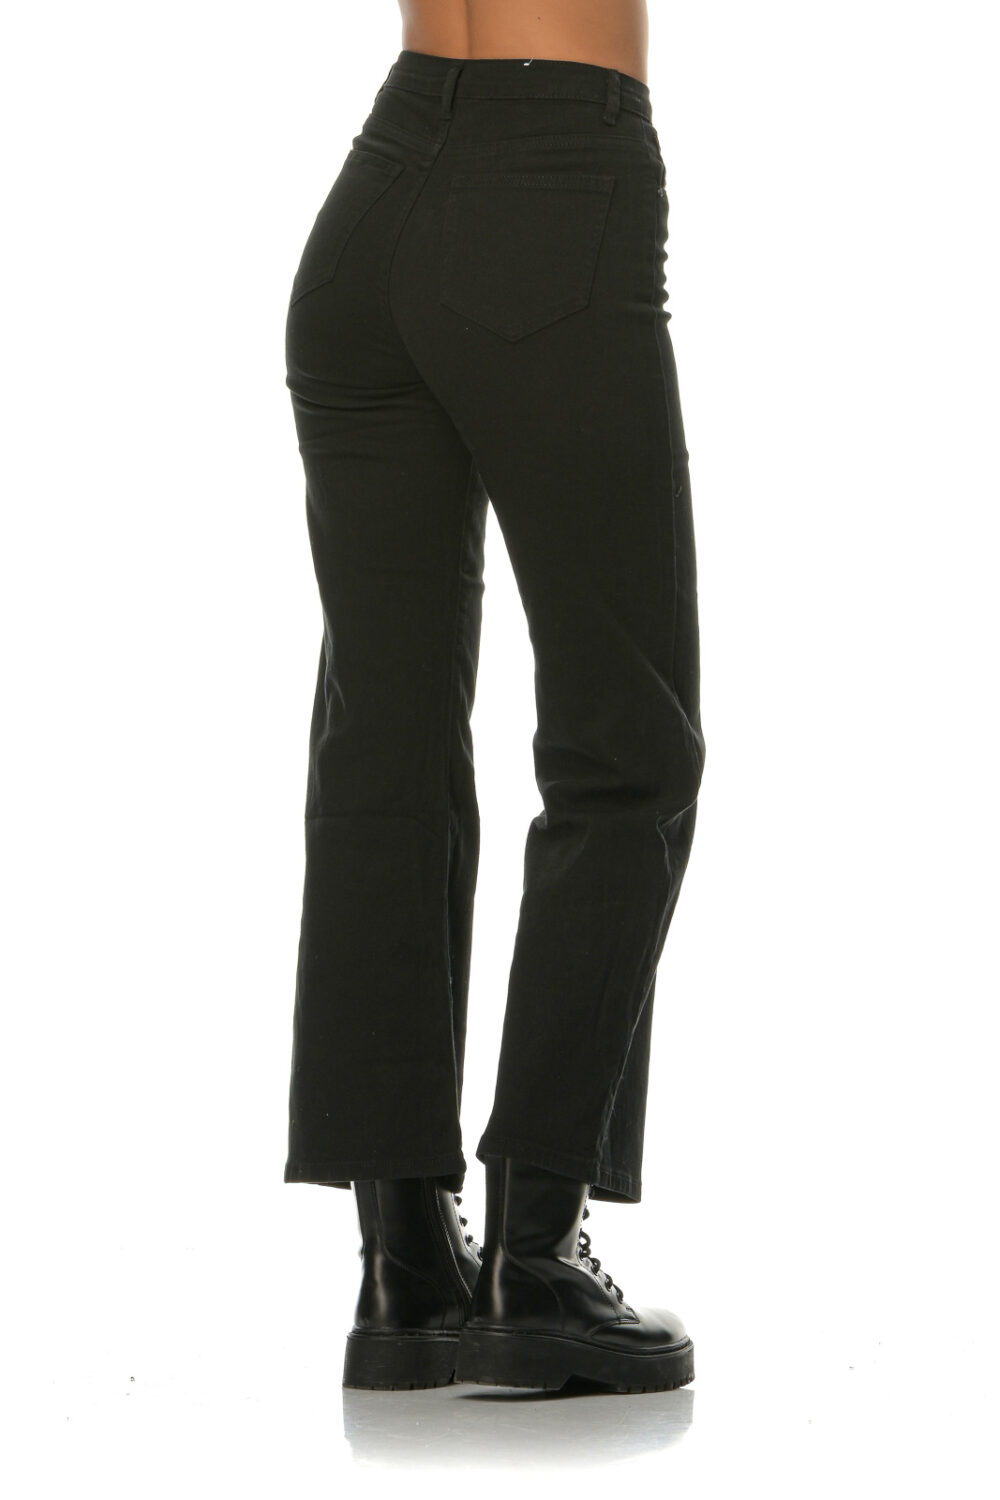 Black jeans high waist elastic bell bottoms